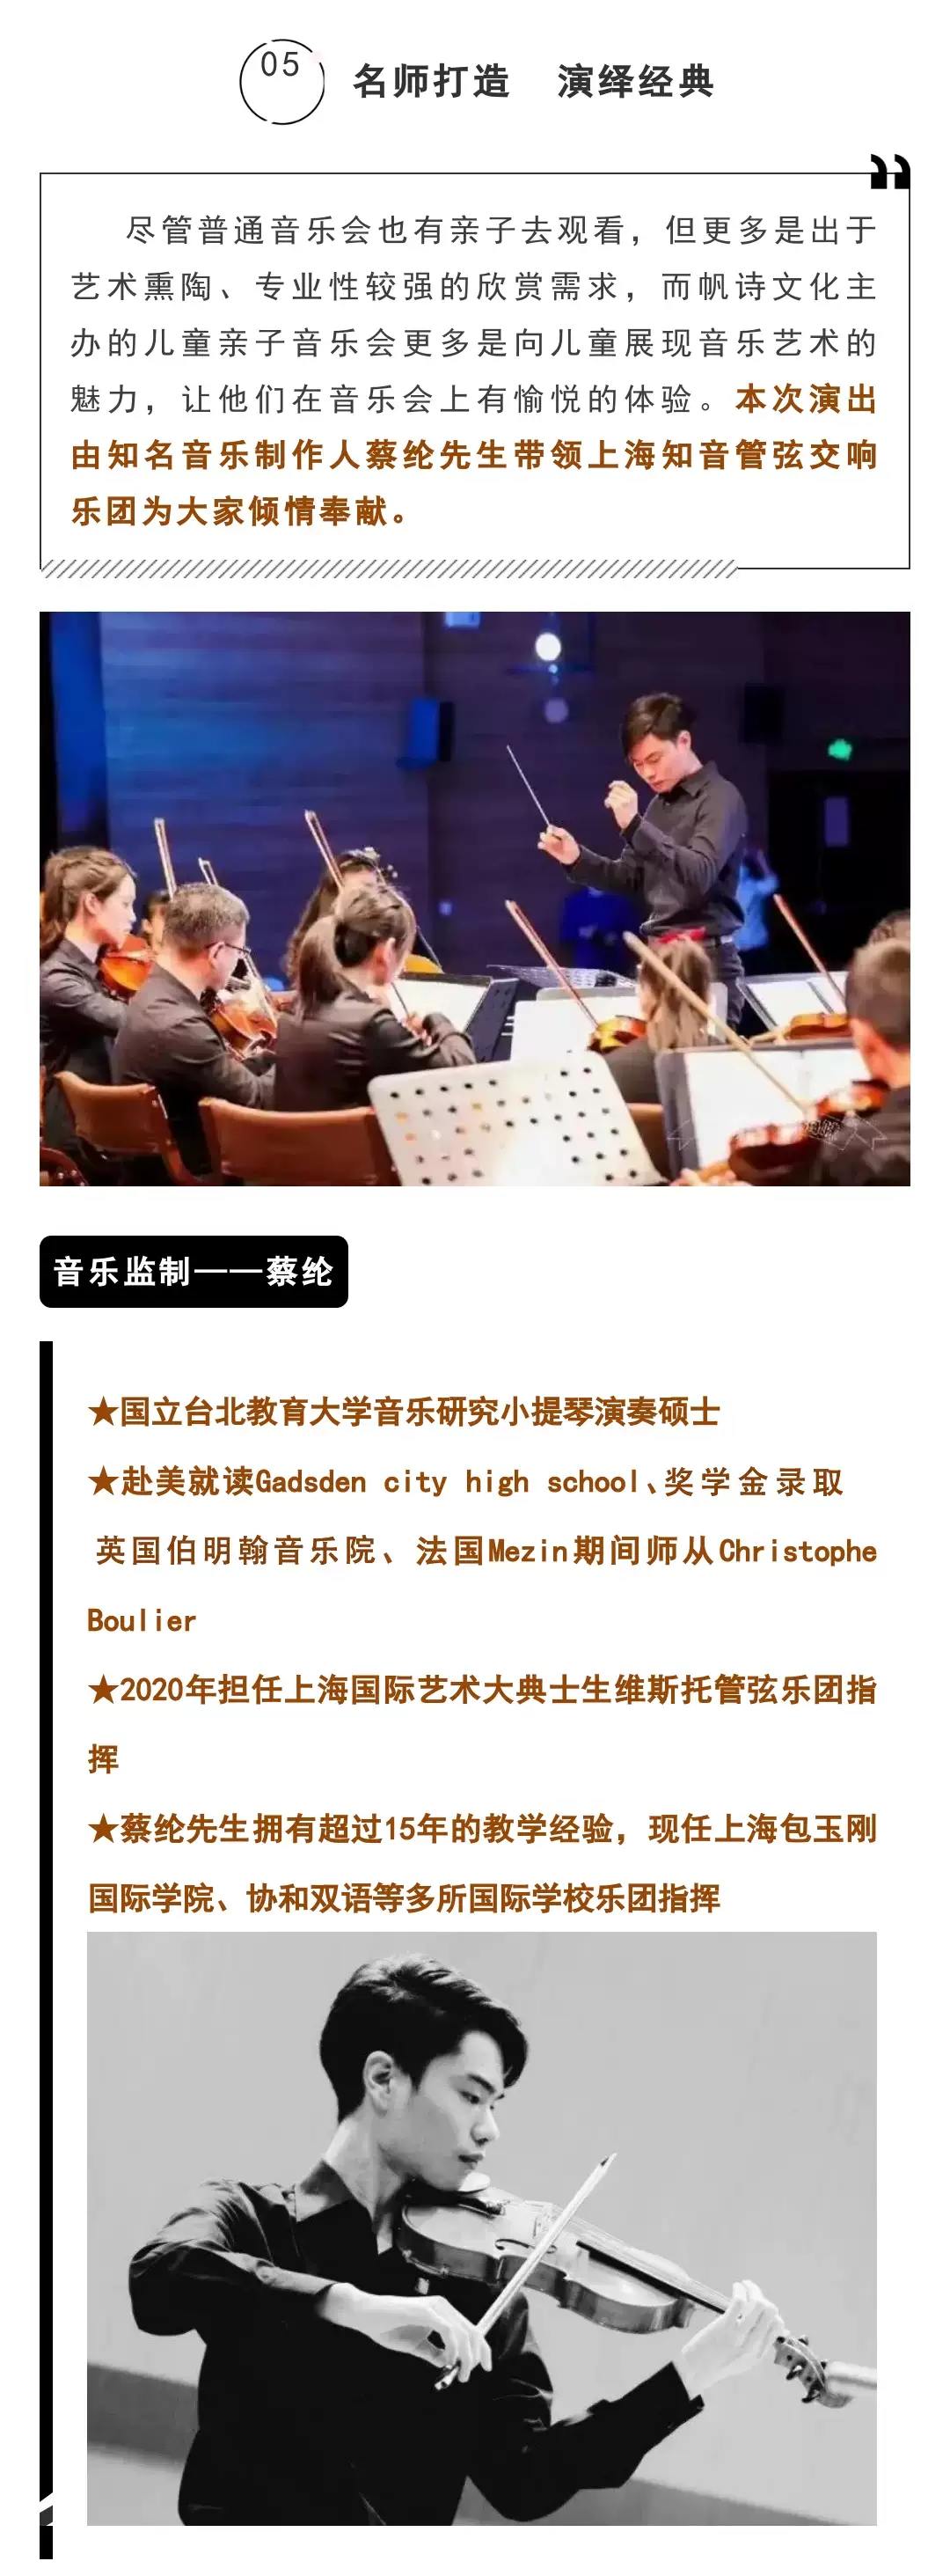 2023迎新春儿童动漫视听交响音乐会《森林狂想曲》-上海站